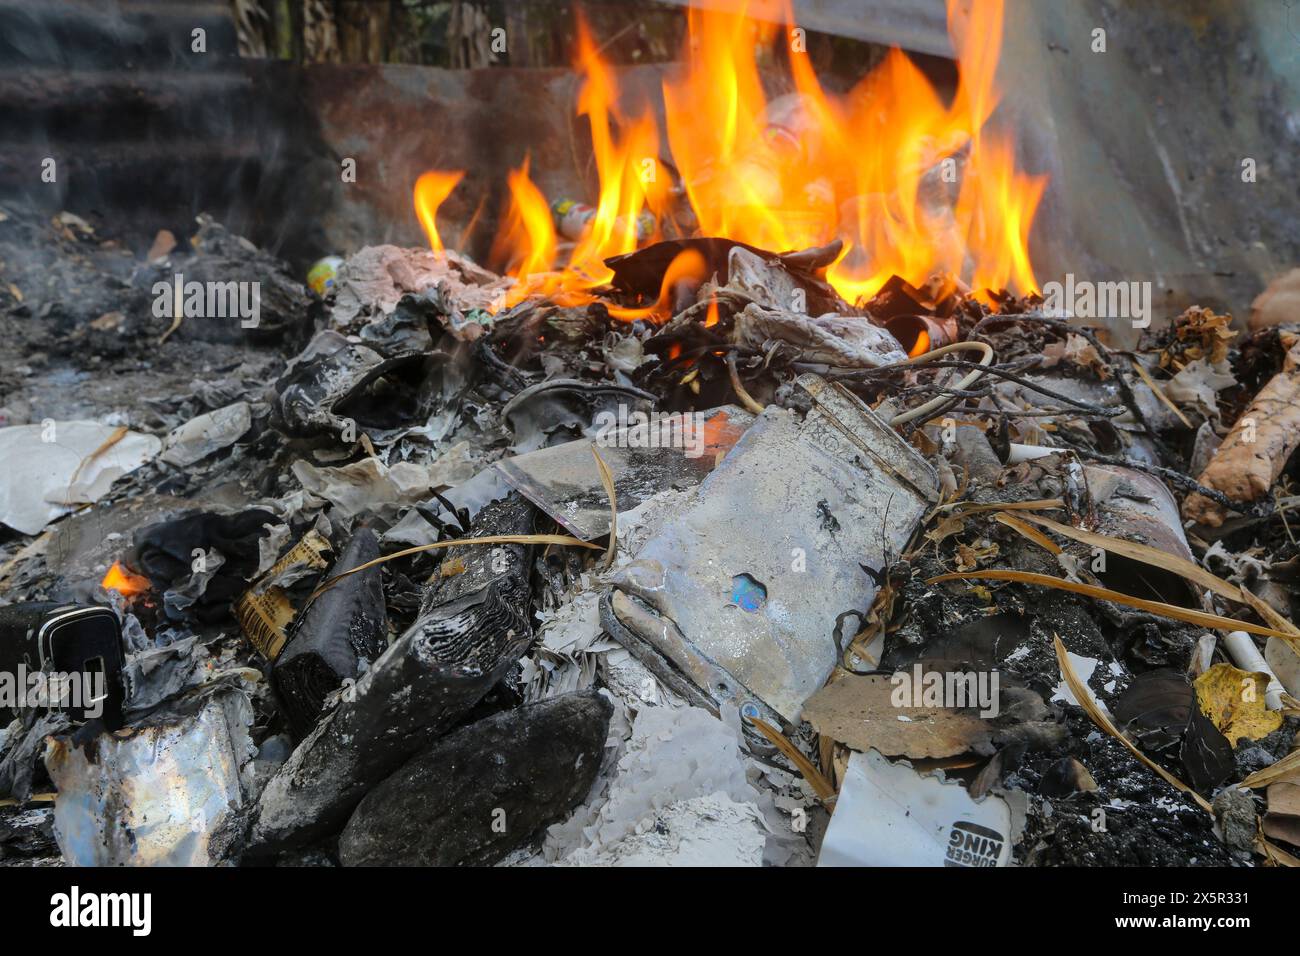 Filippine e problema di inquinamento dei rifiuti: Elettronica bruciata tra i rifiuti domestici: IPhone, batteria al litio power Bank, cavi, caricabatterie, scarico tecnologico Foto Stock